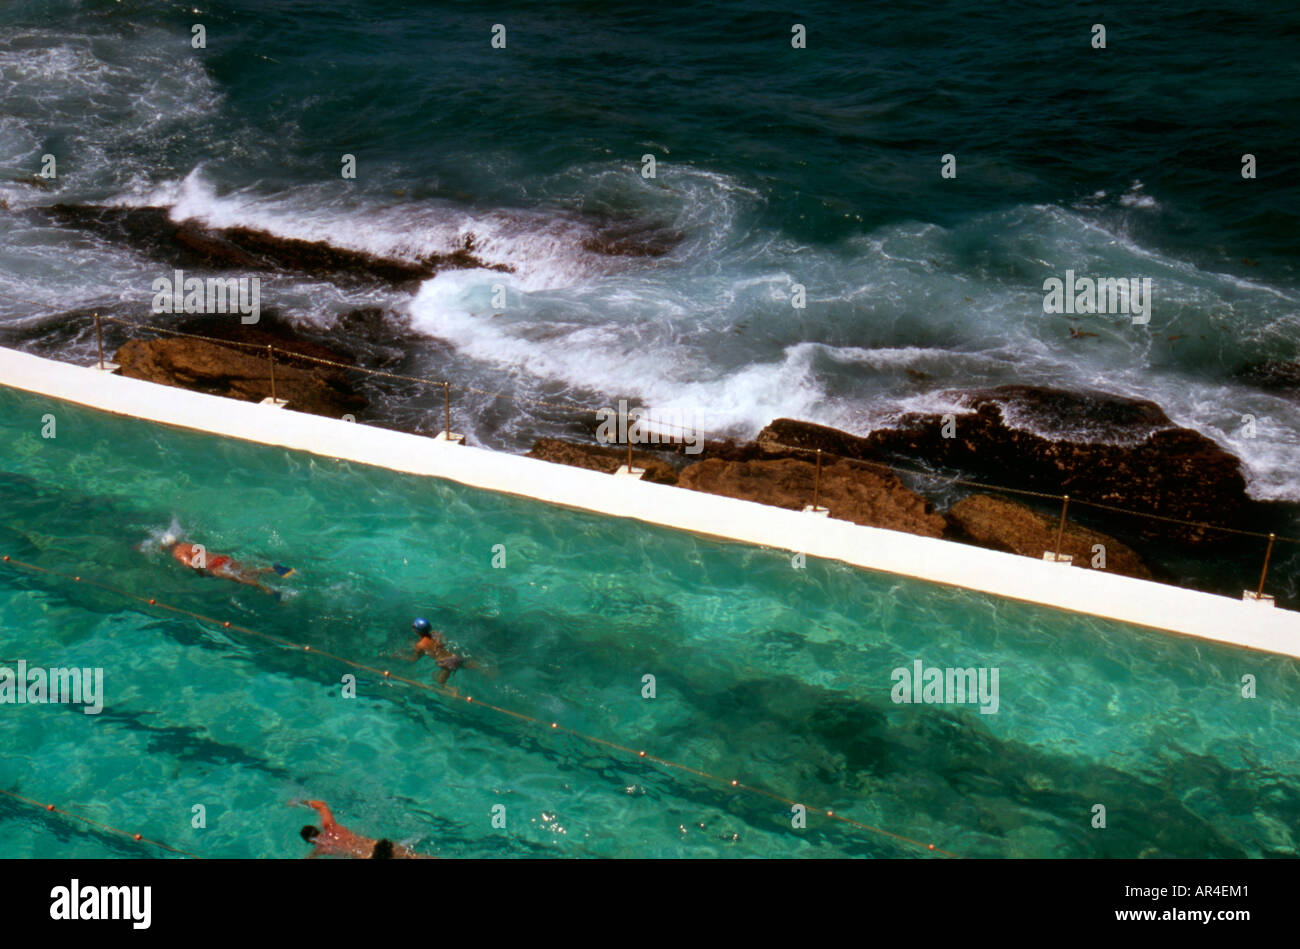 Nuotare in riva al mare Foto Stock